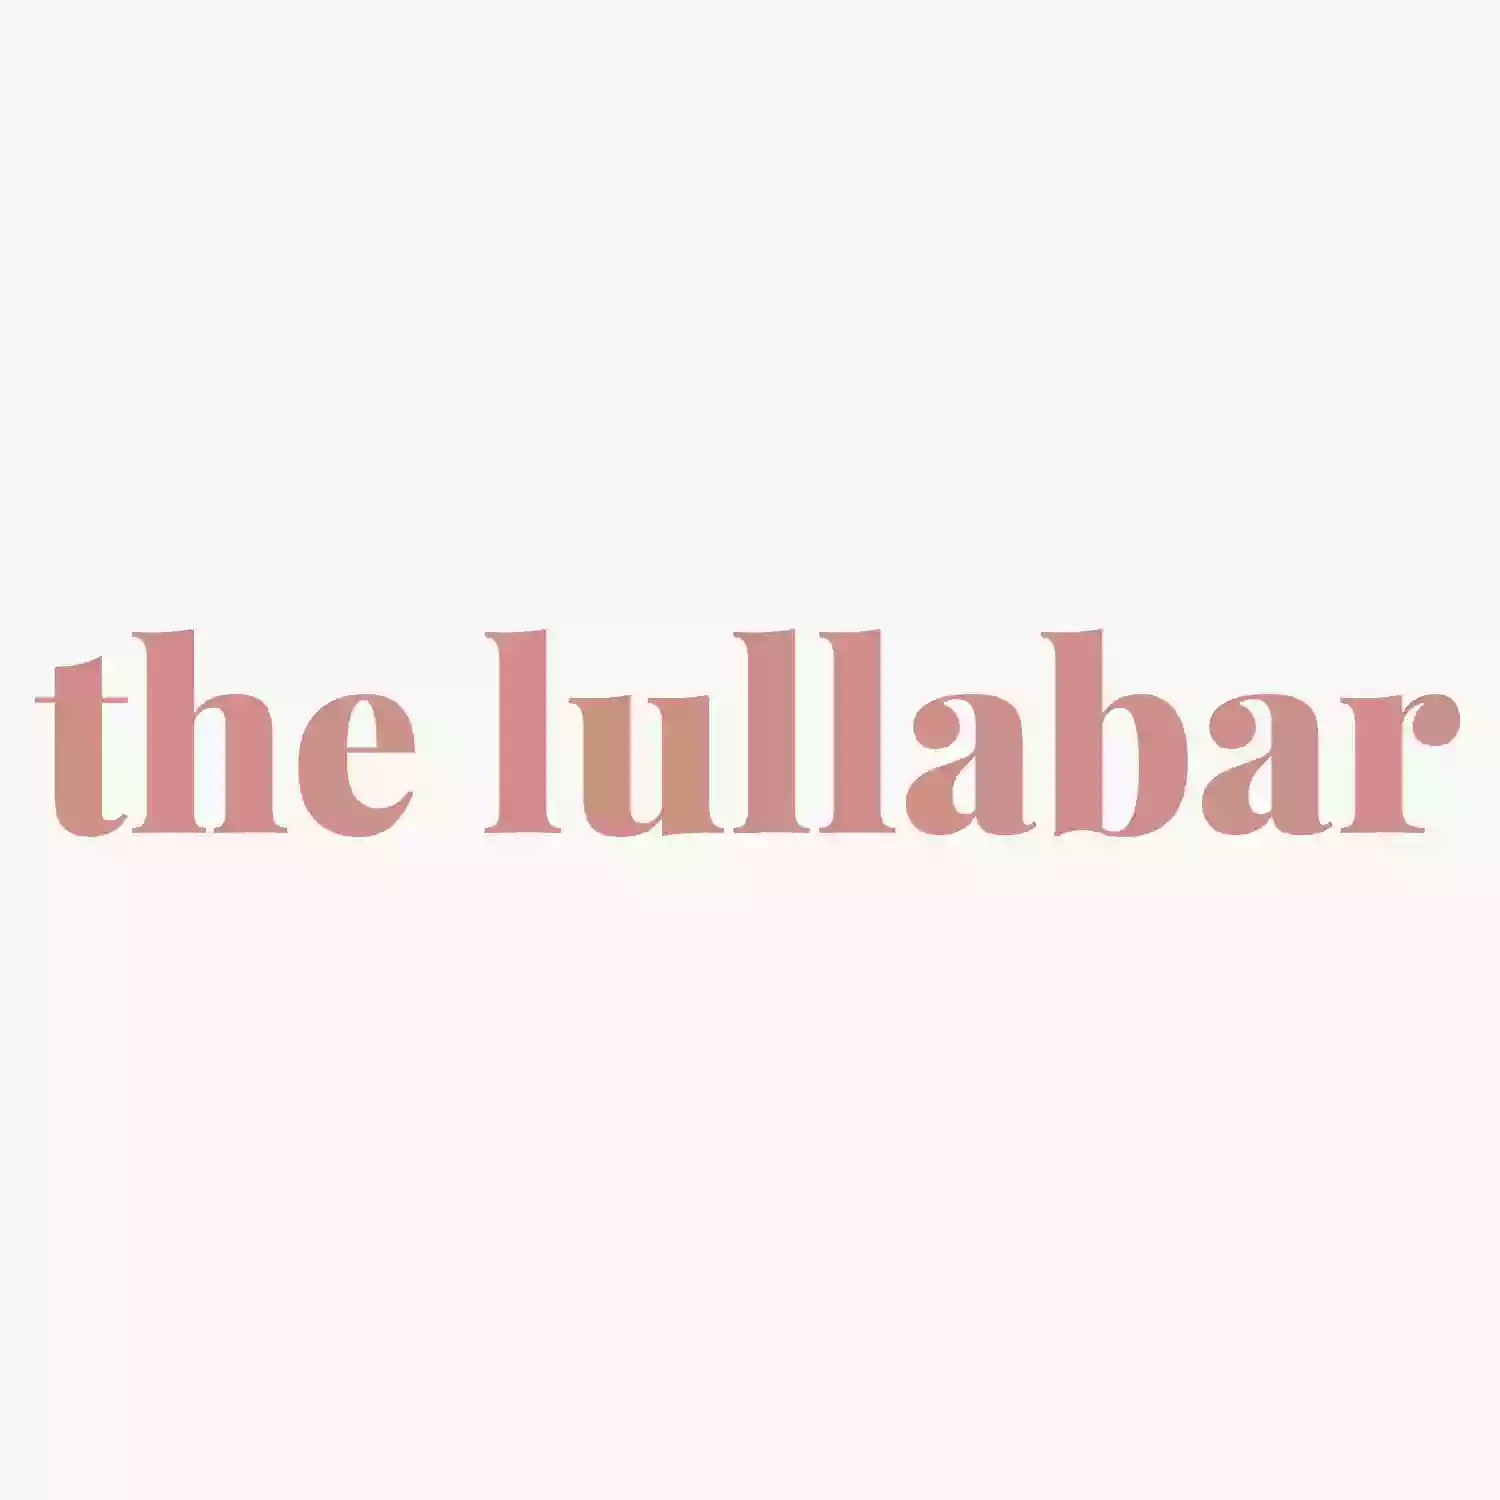 The Lullabar